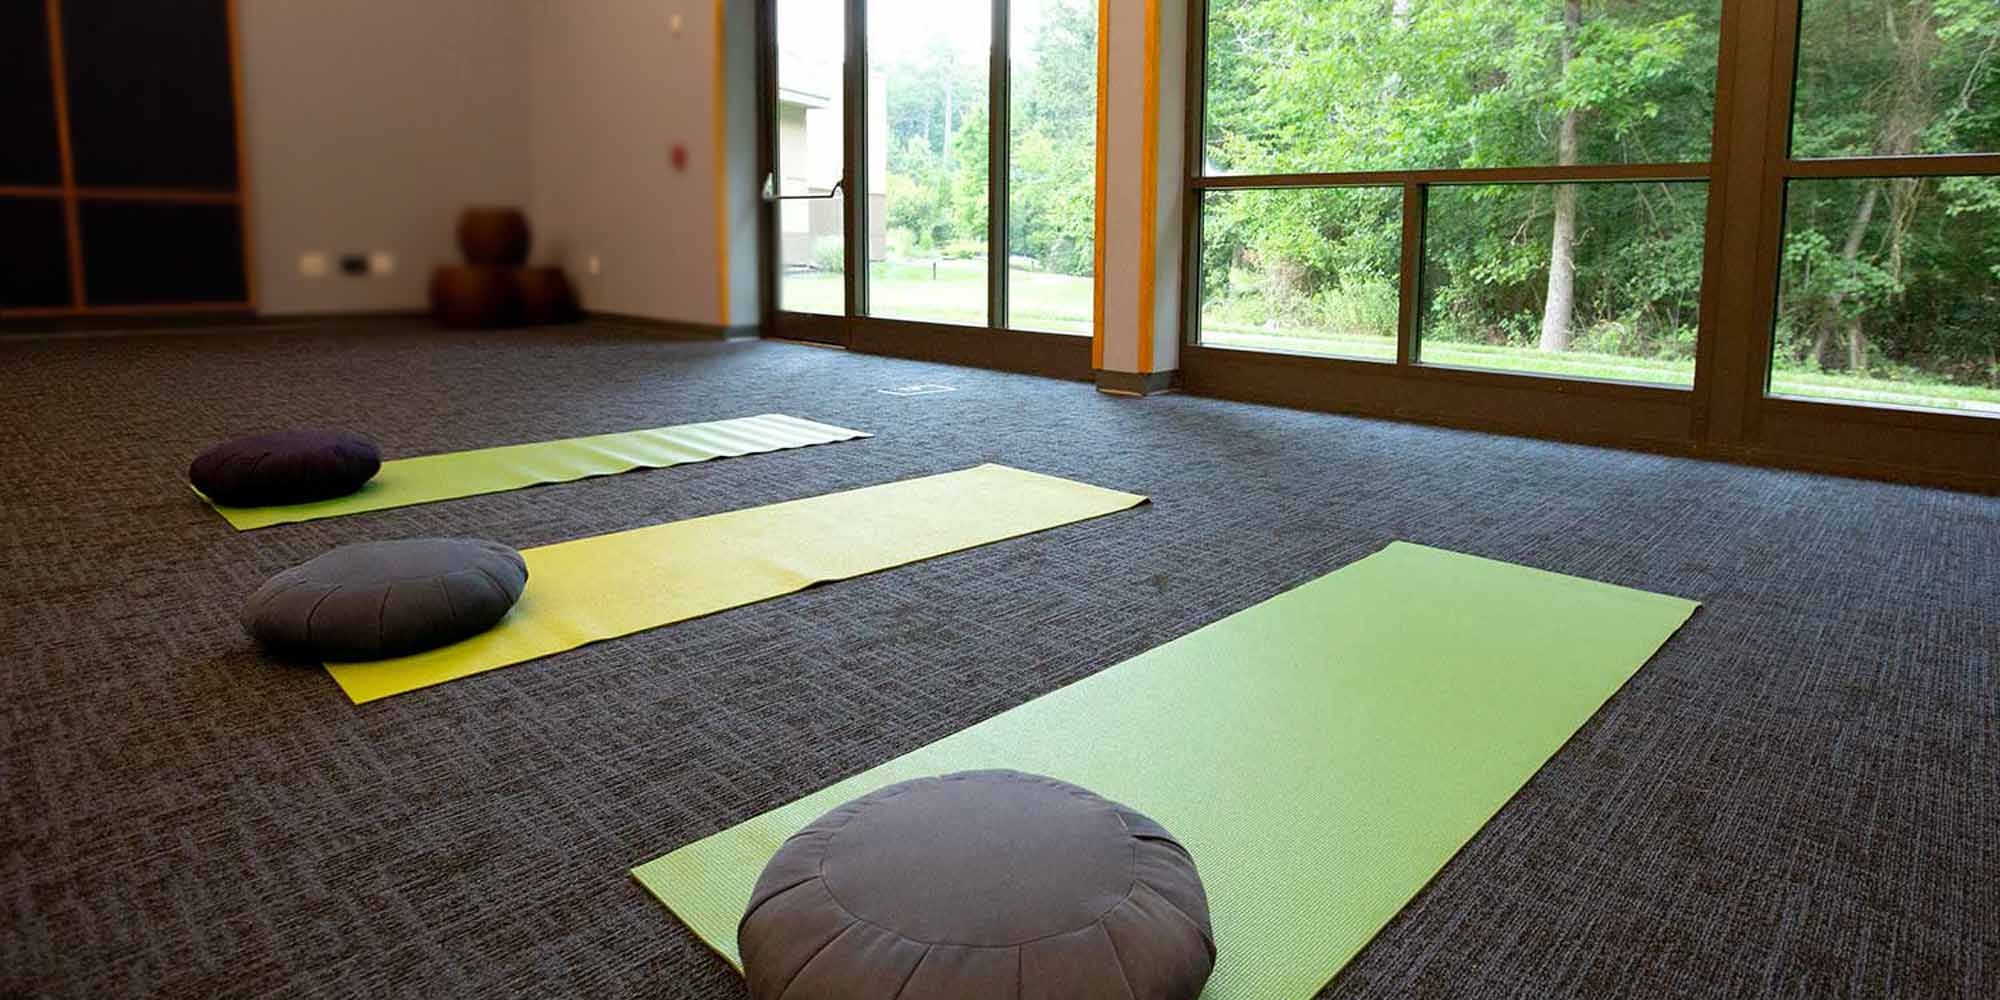 A yoga room at Duke Integrative Medicine